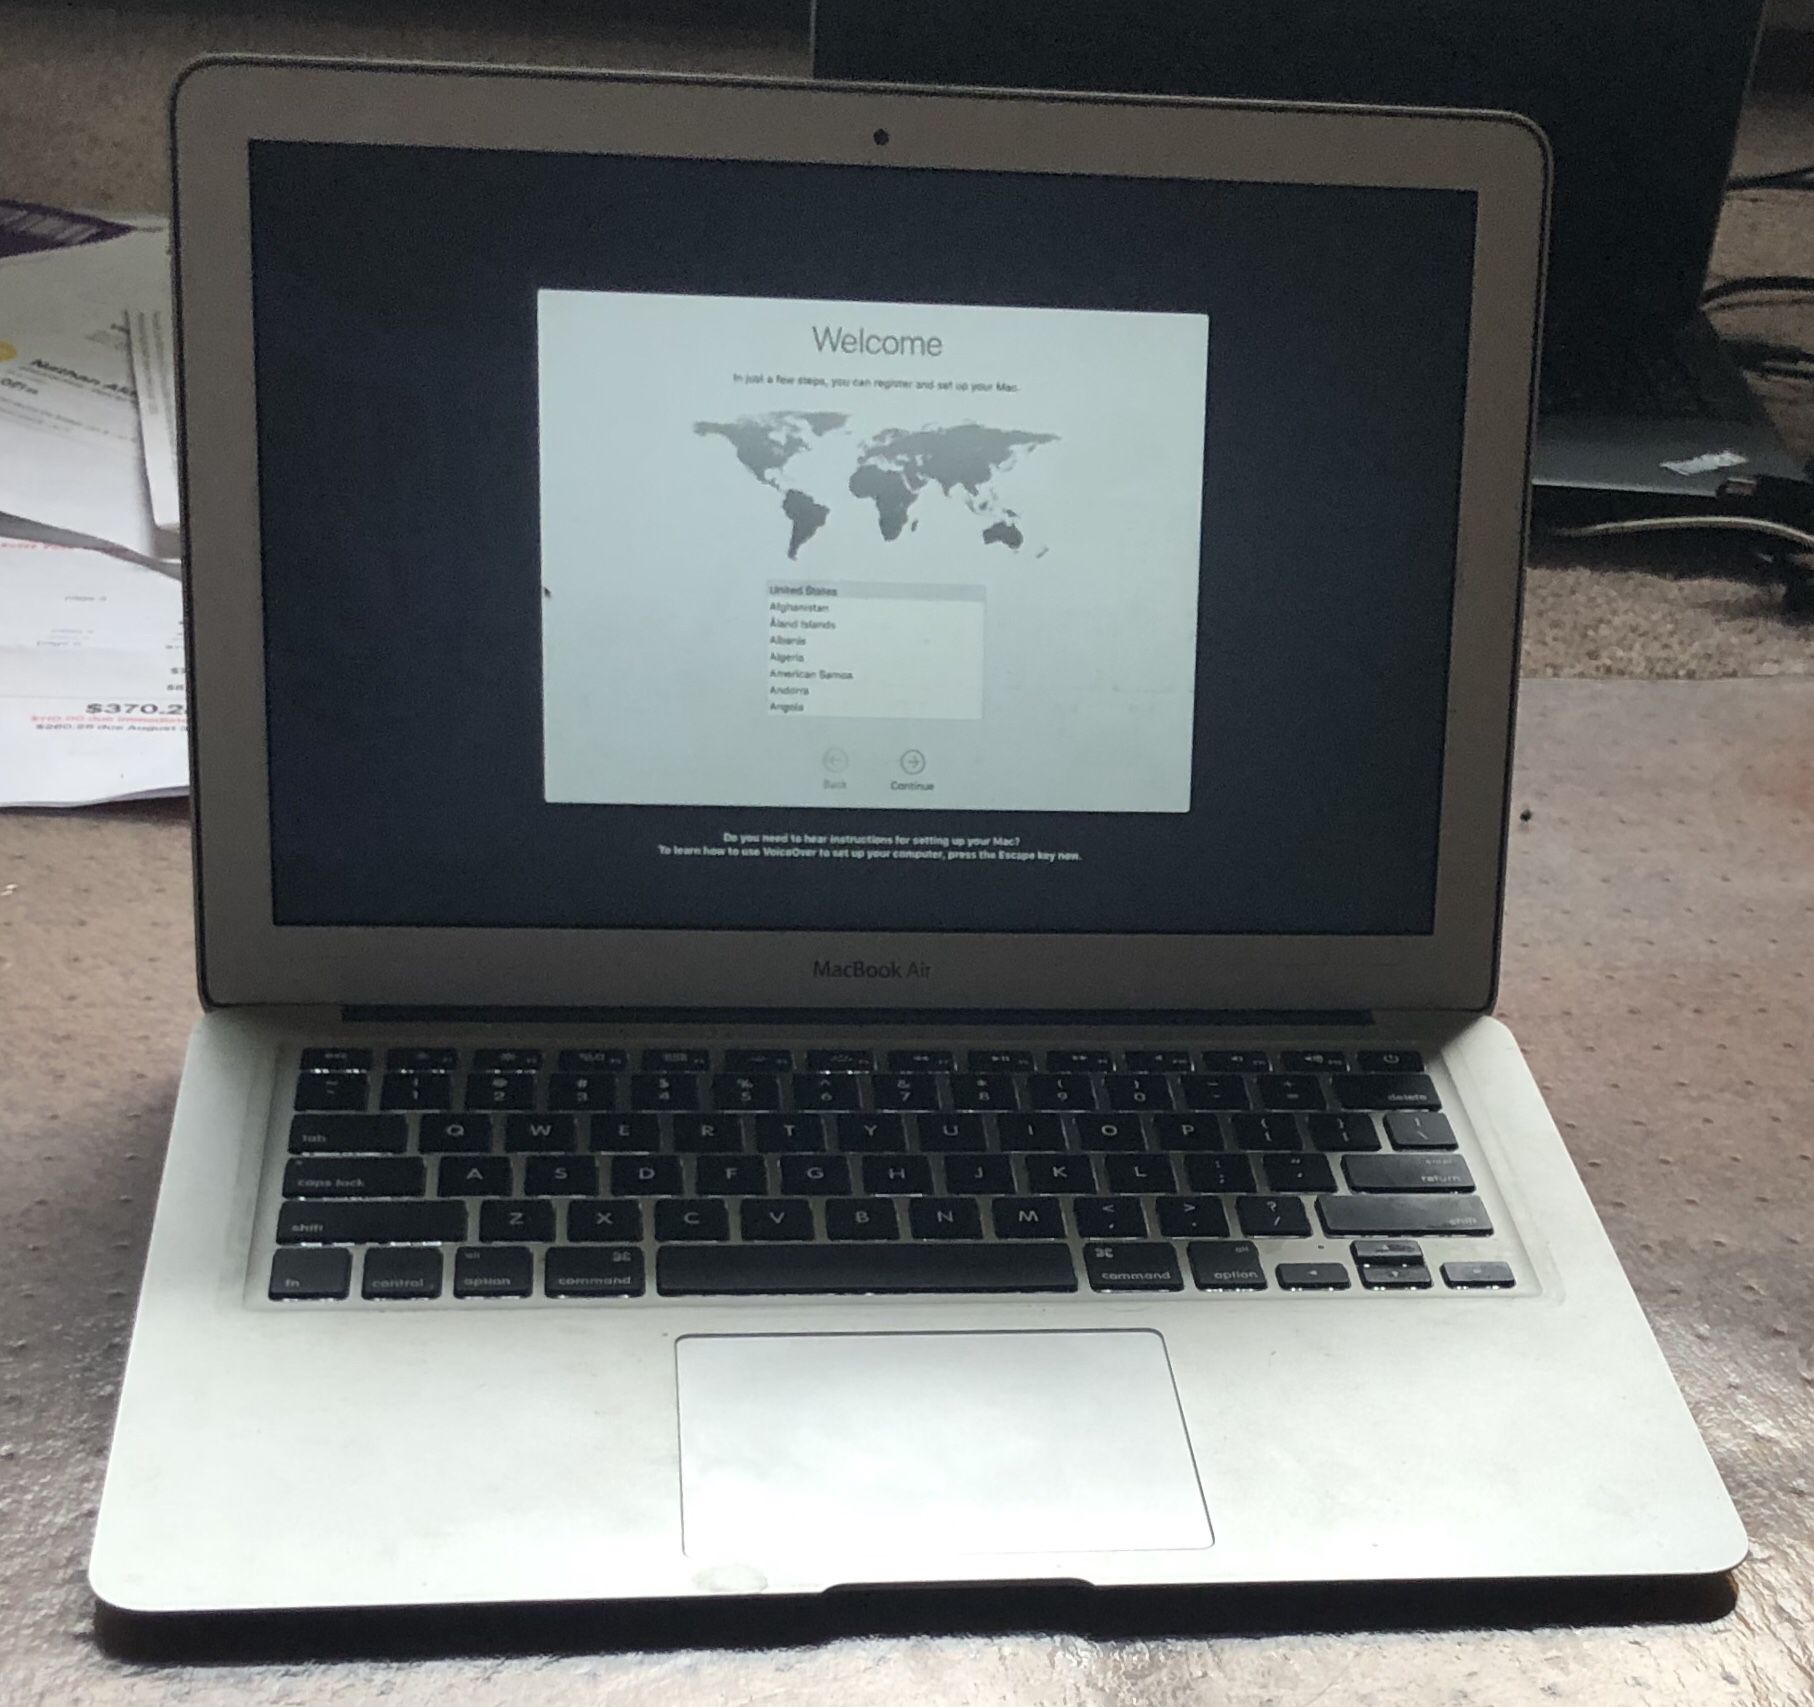 Apple MacBook Air (2011) Ultralight Notebook